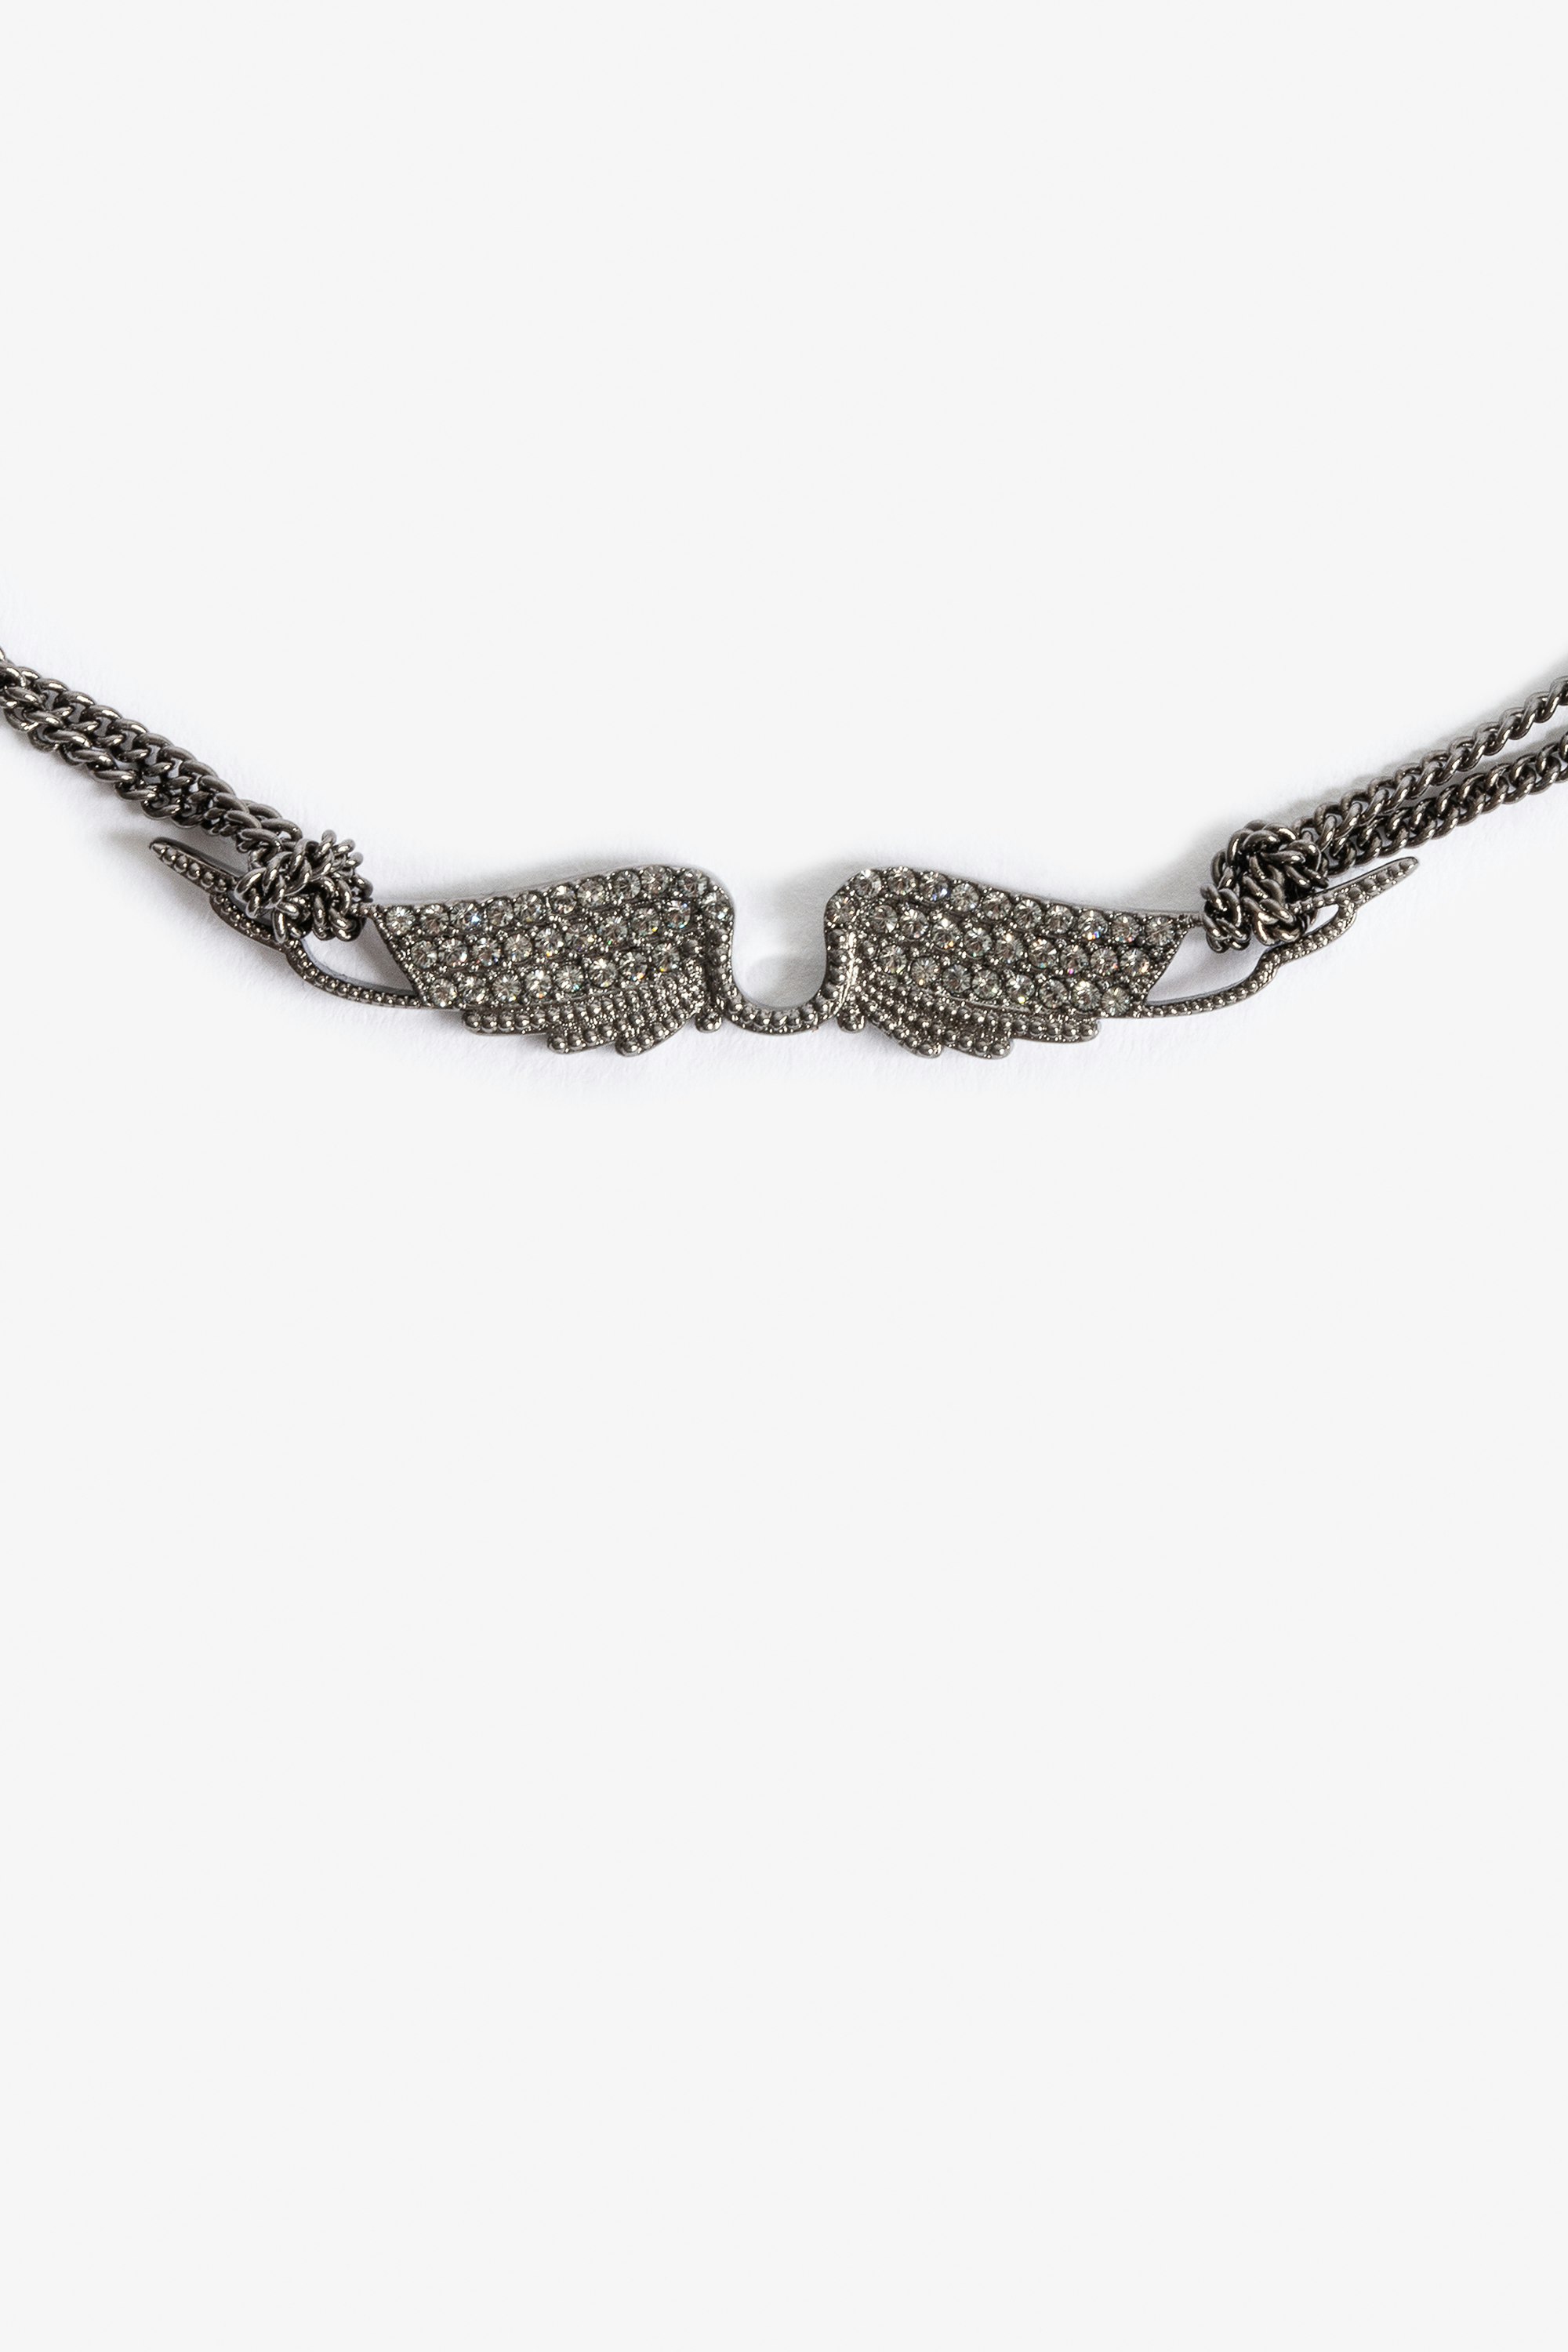 Collier Rock Choker - Collier court en laiton noirci muni d'un pendentif ailes serti de cristaux.